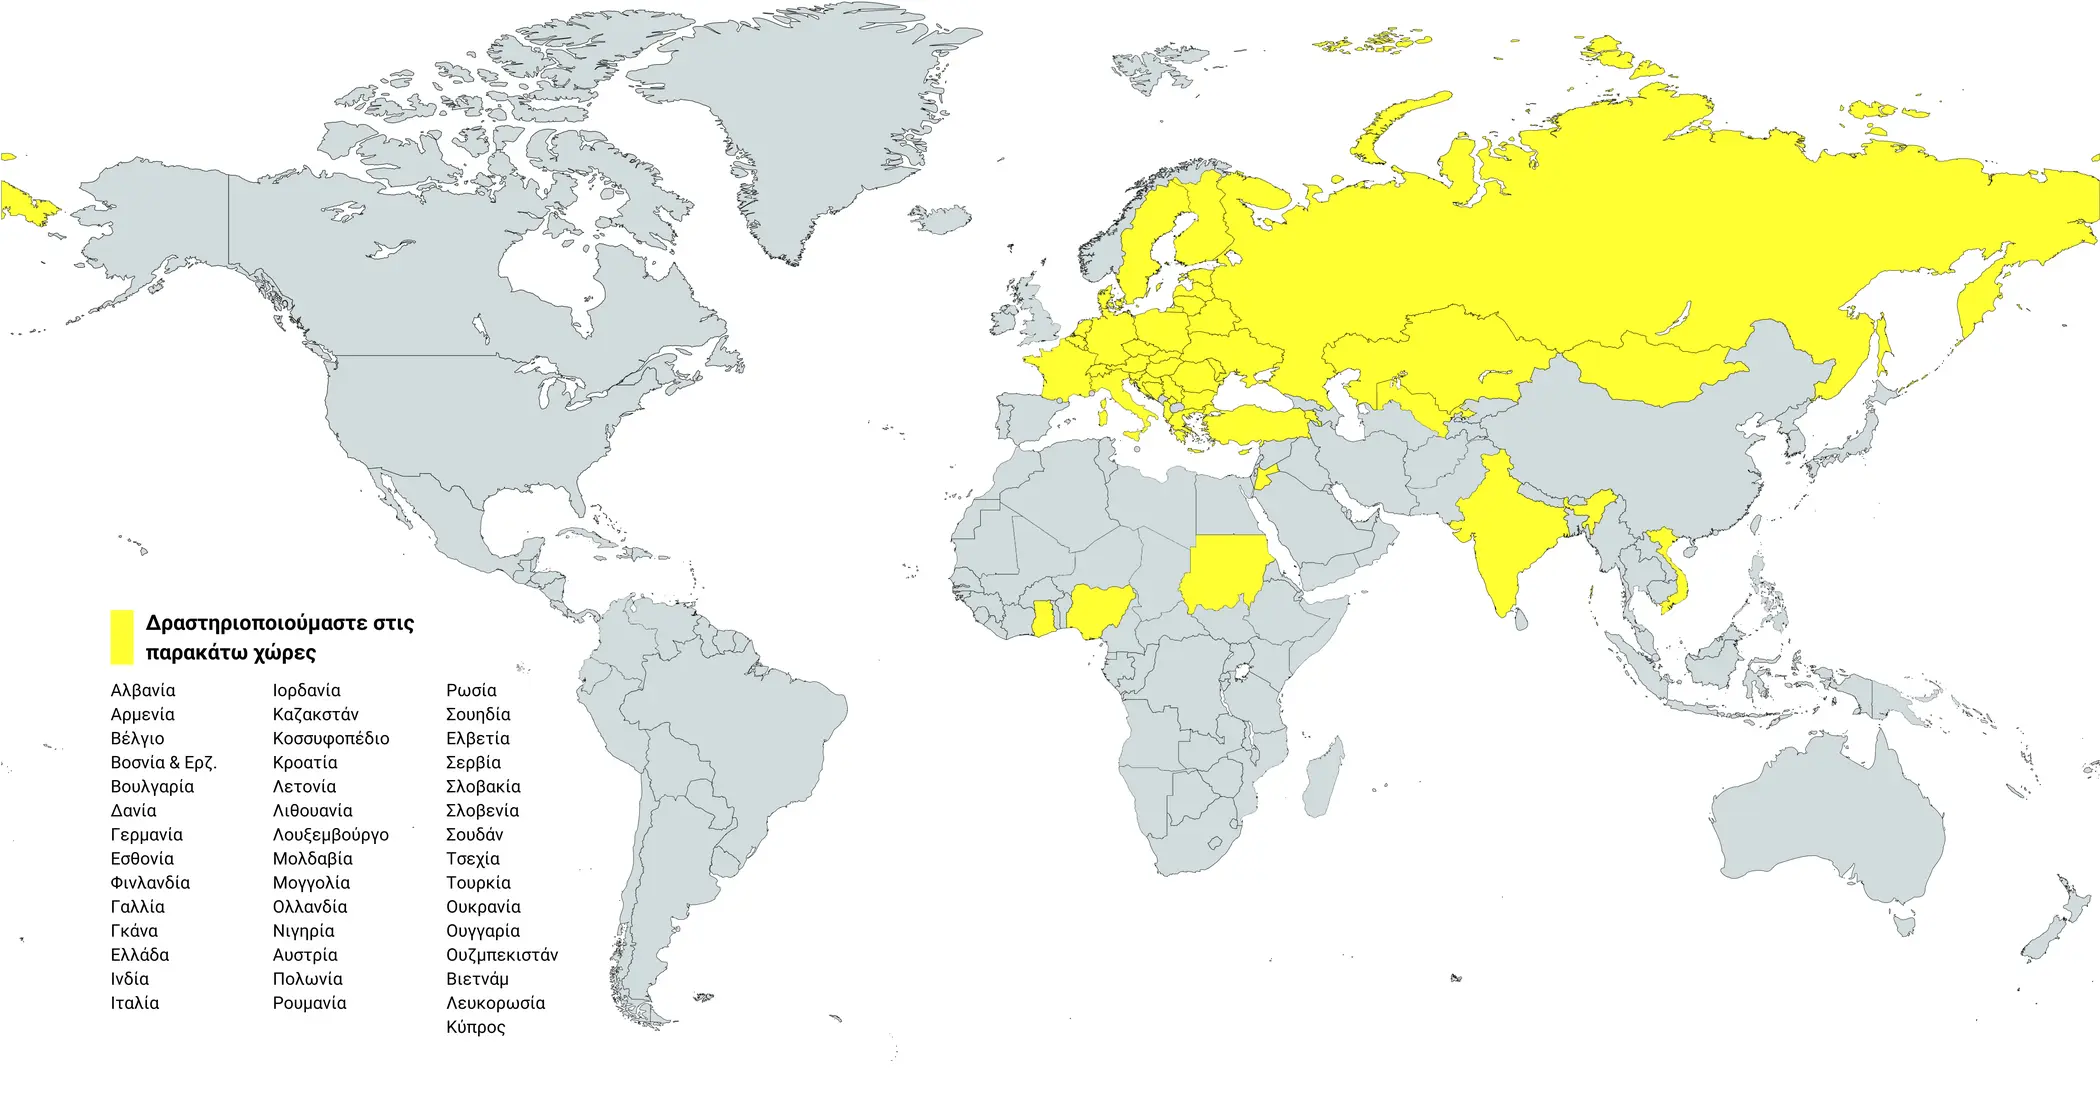 Χάρτης των χωρών με τους πελάτες της HYBRIMIN, Λογισμικό διαμόρφωσης ζωοτροφών